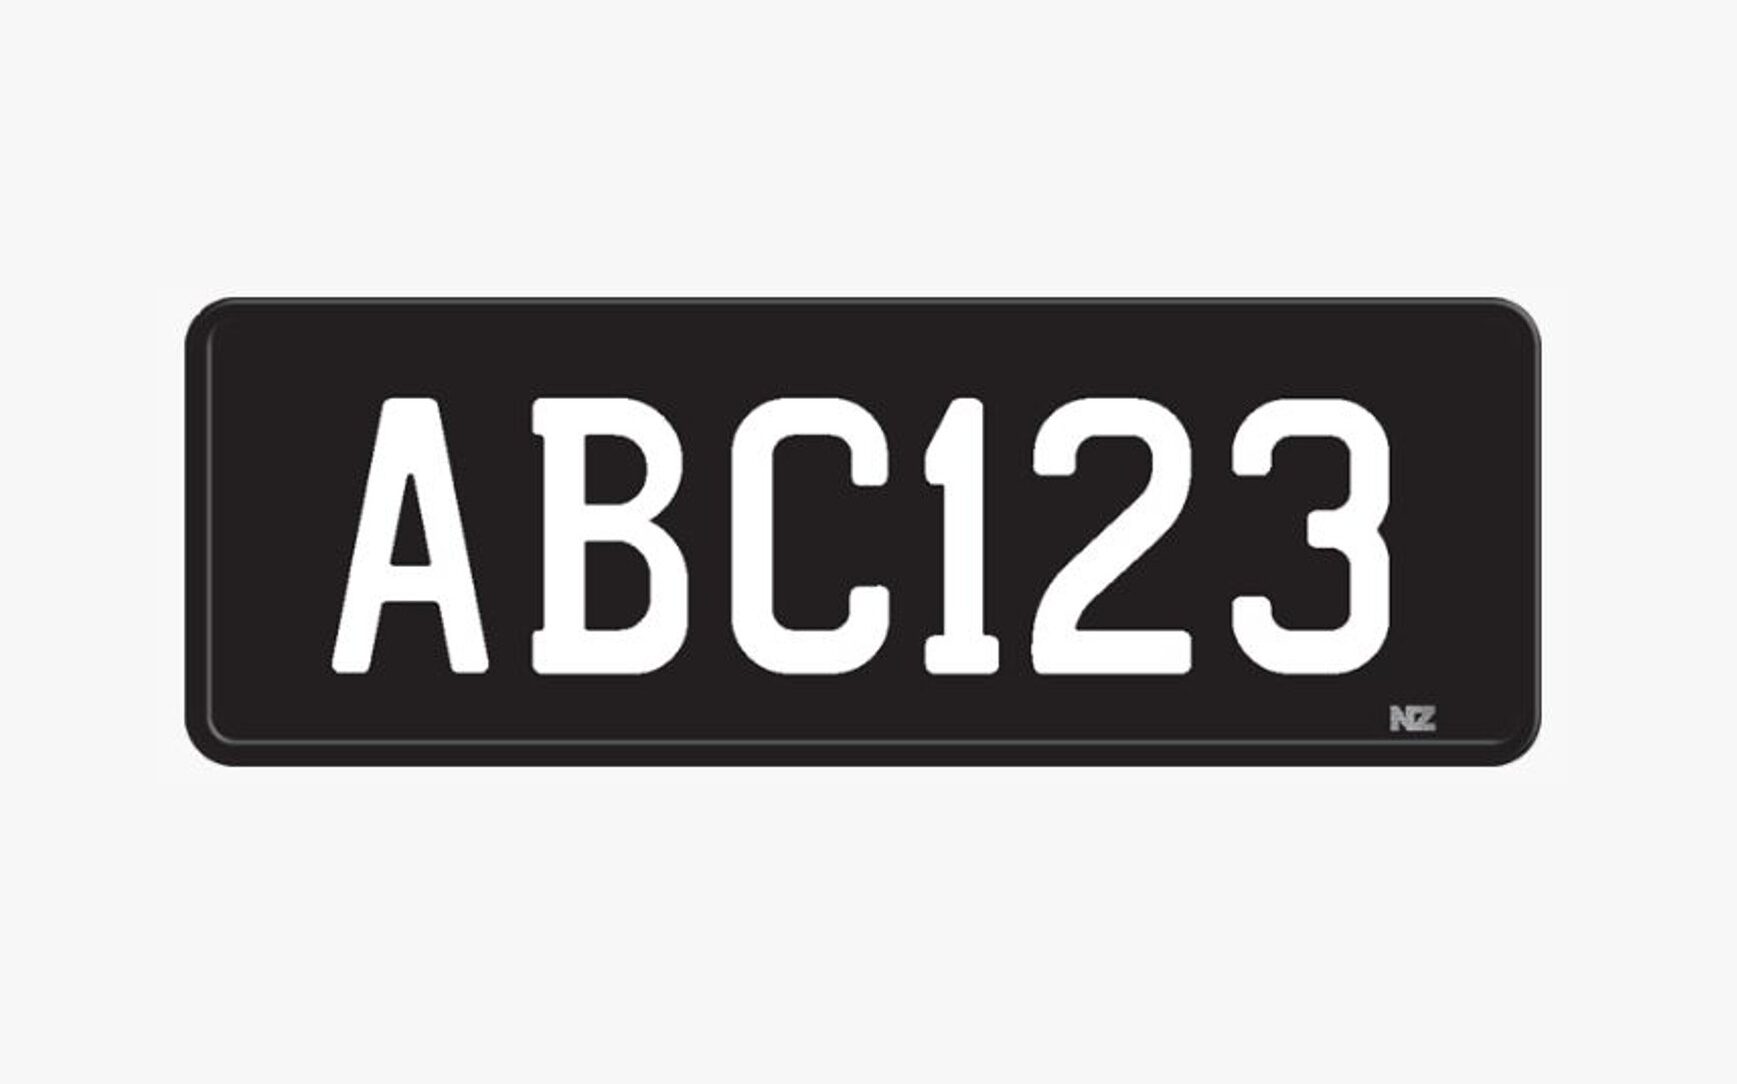 Sorprendido Microordenador cocinero Kiwis can now get black license plates - NZ Autocar